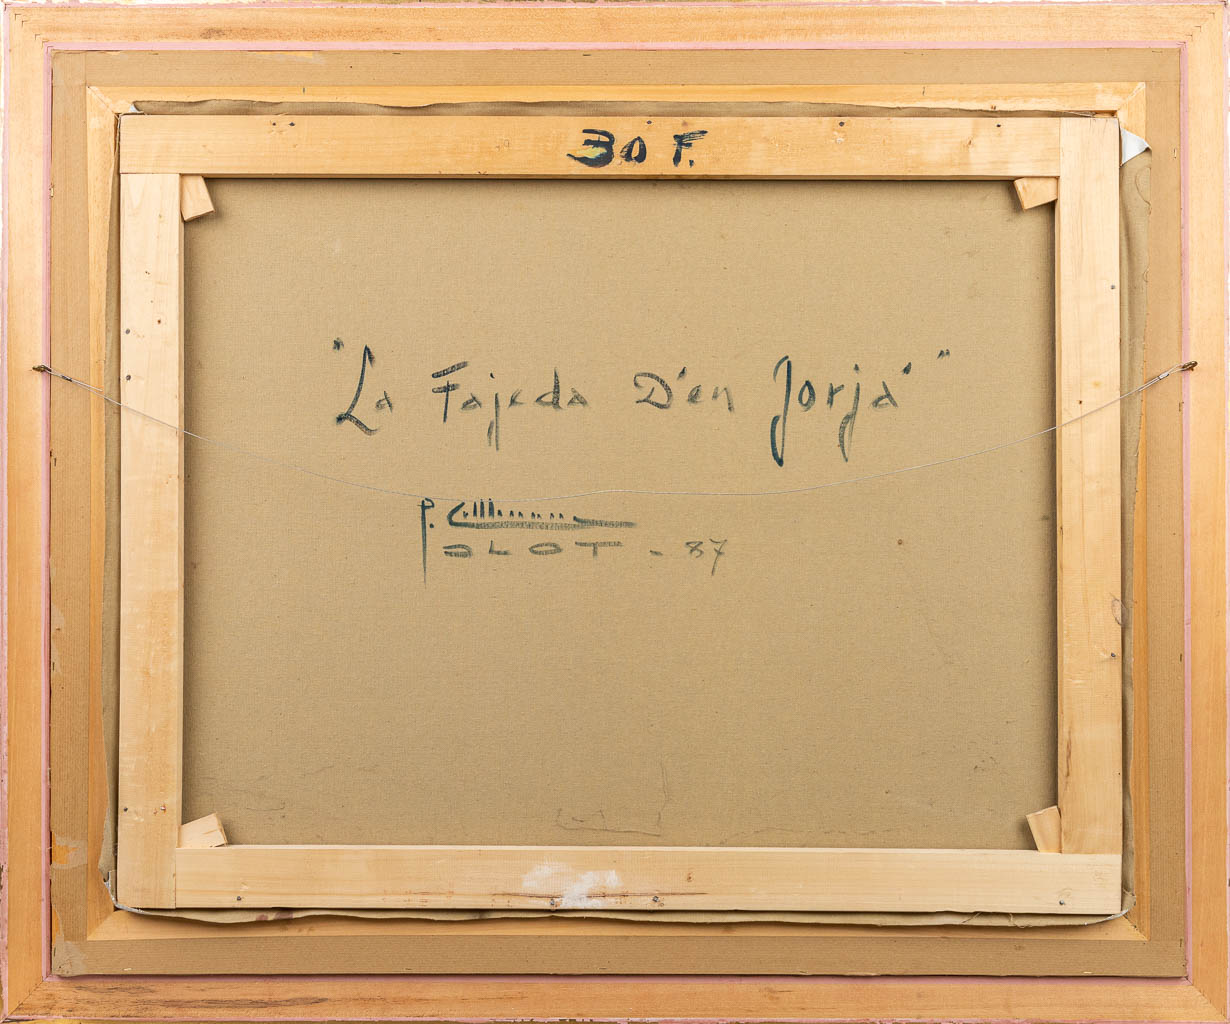 Pere COLLDECARRERA (1934) 'La Fajeda D'en Jorja' 1987. Een schilderij, olie op doek. (90 x 71 cm)